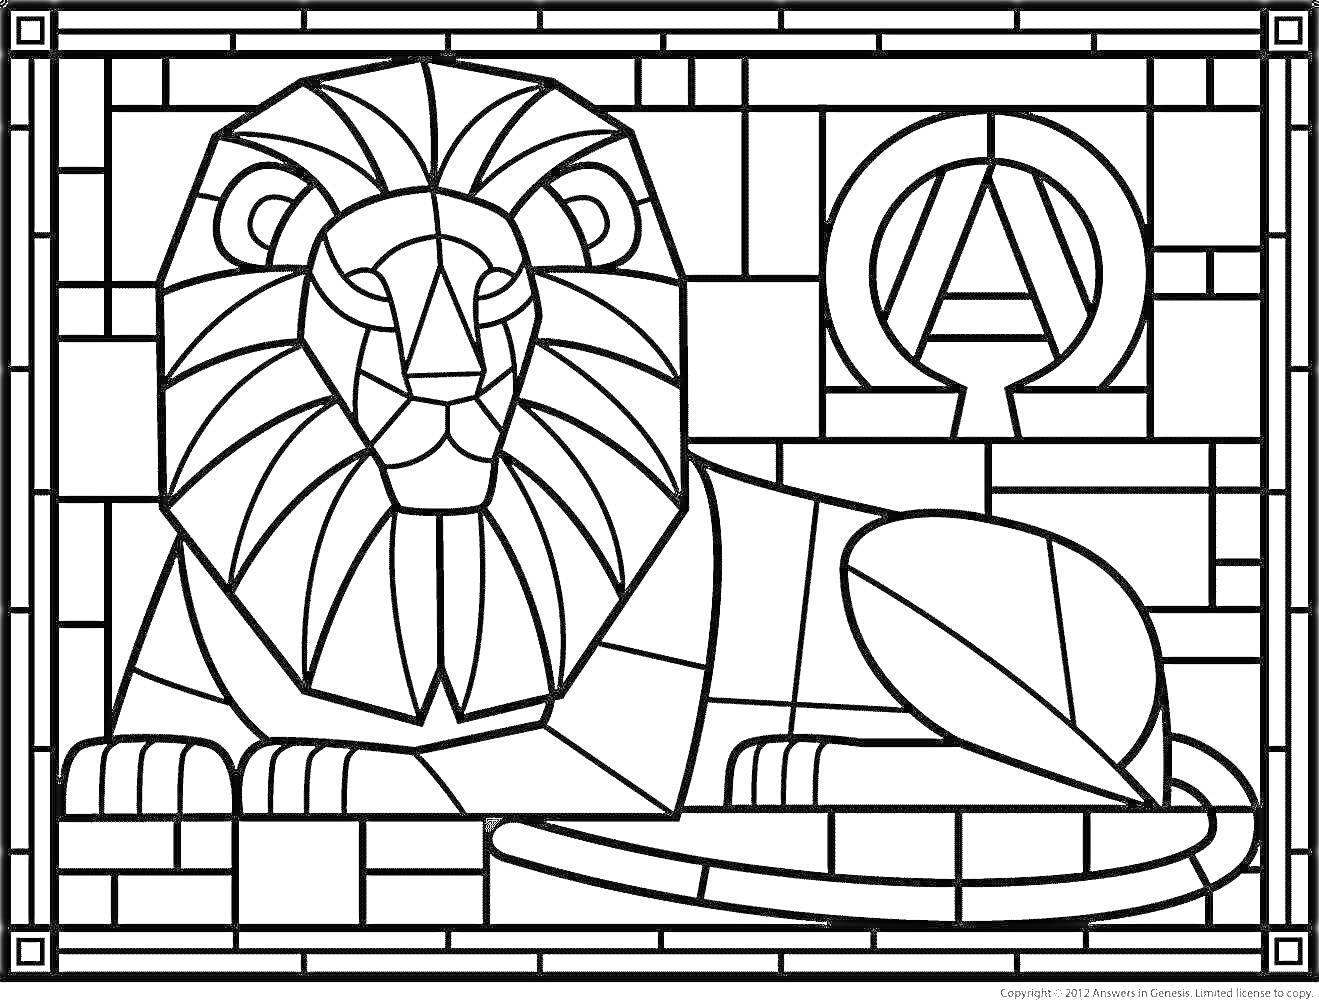  Лежащий лев с греческой буквой омега на фоне мозаики